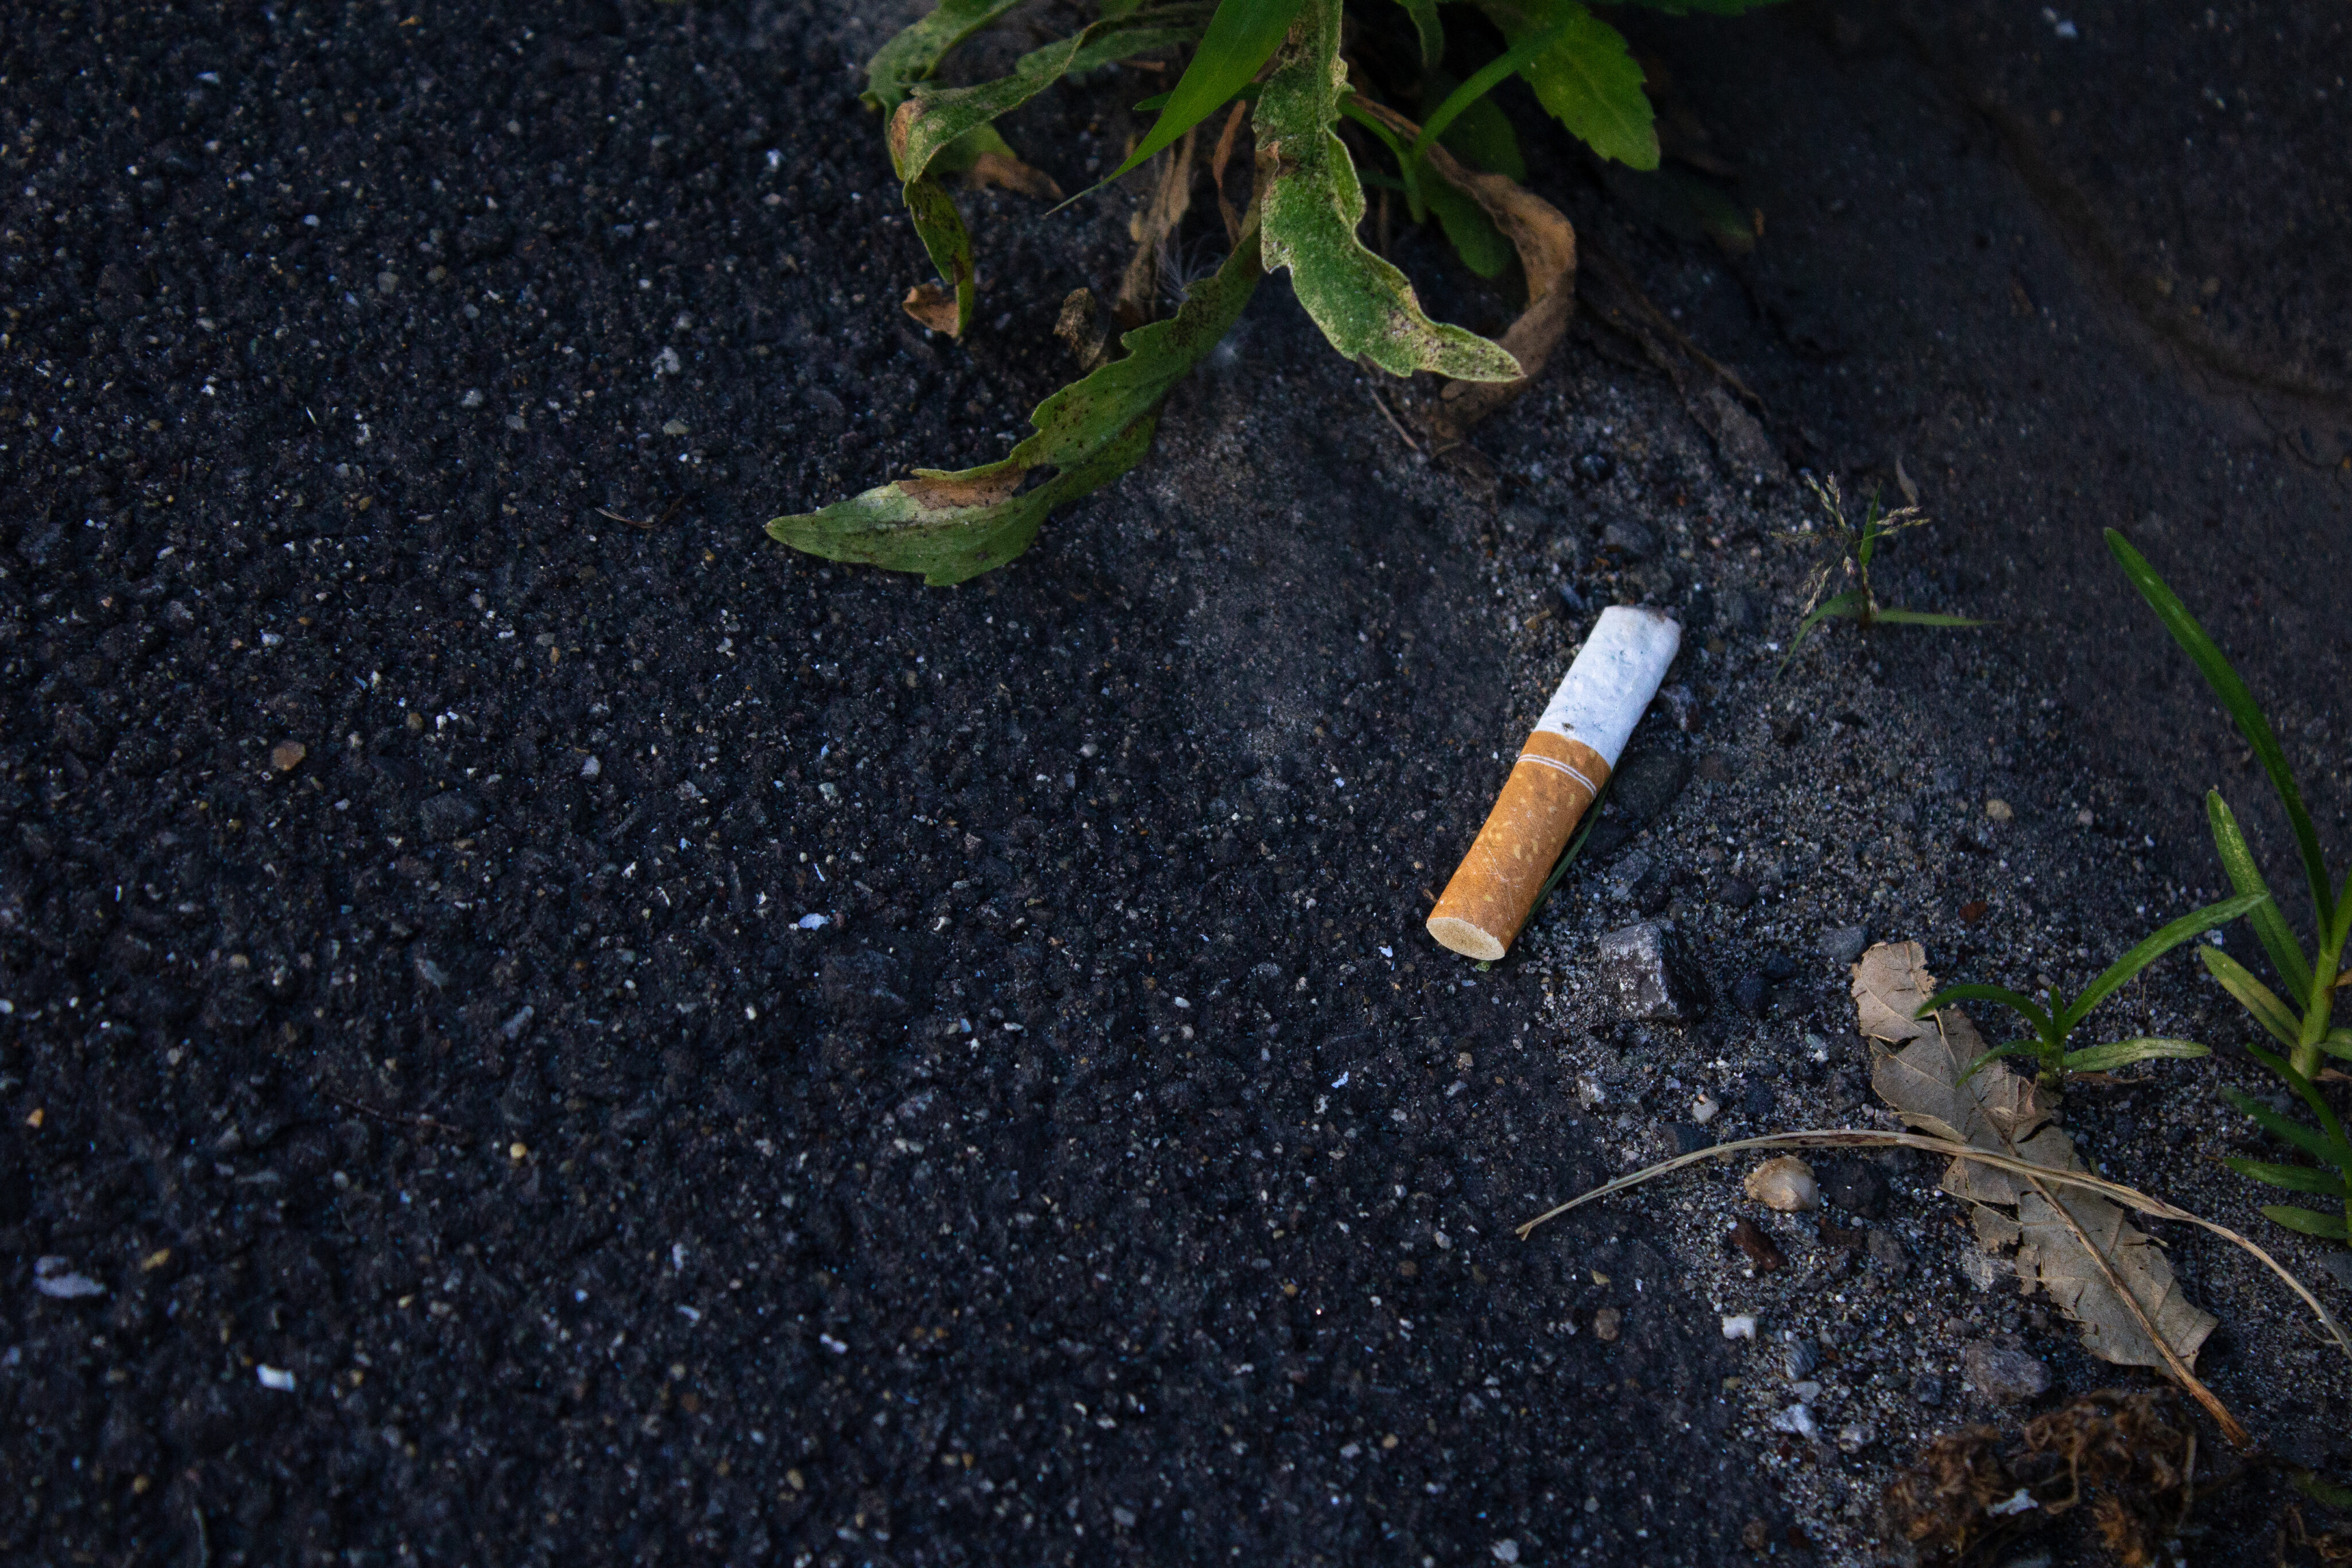 Rauchstopp Tipps: nicht zu Ende gerauchte Zigarette auf Asphalt